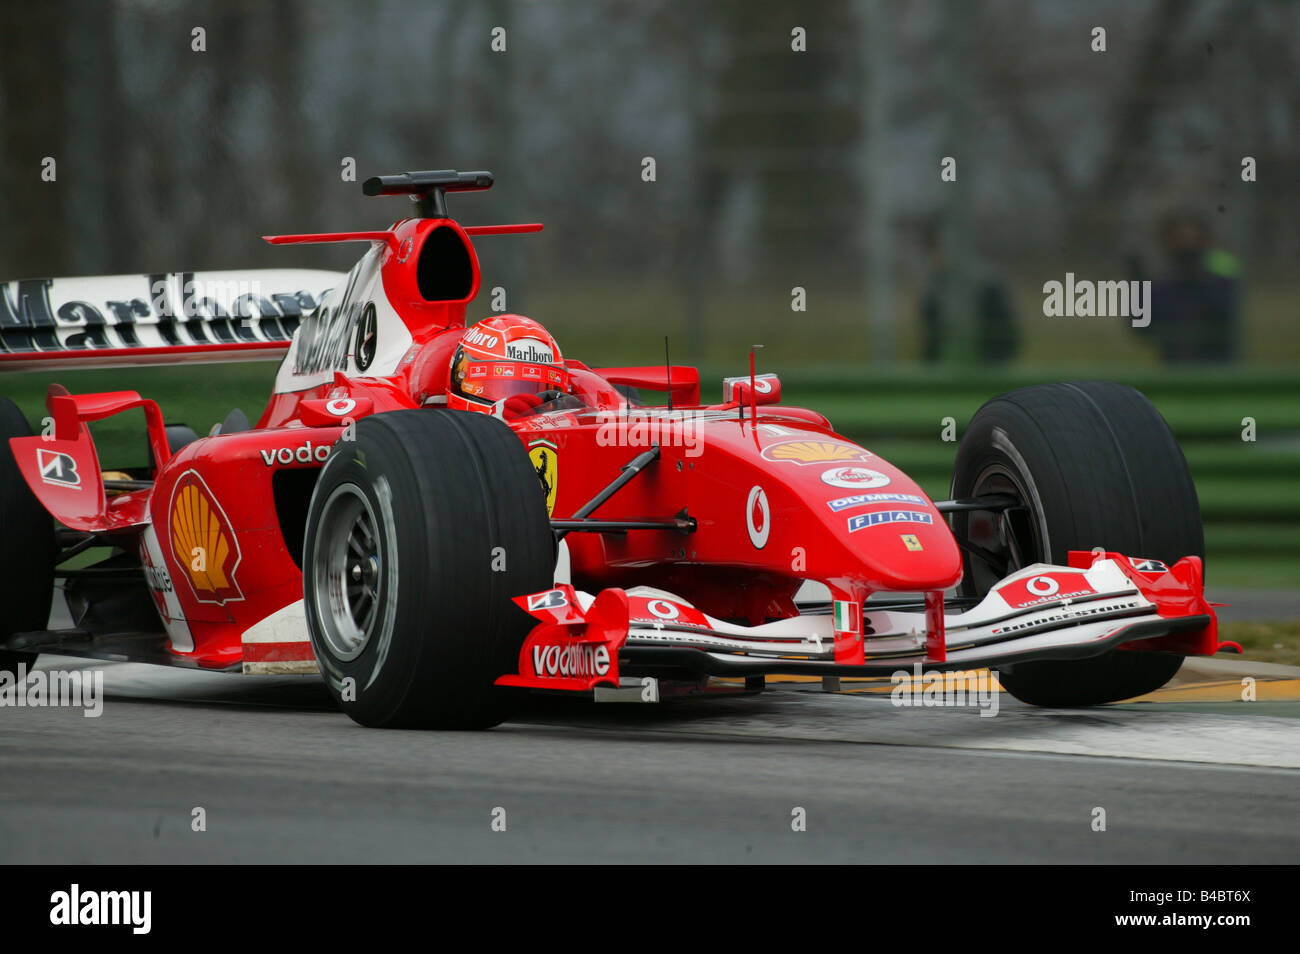 El deporte del motor, Michael Schumacher en Ferrari, FORMEL 1, Personas, Race Driver, racetrack, circuito, Race Course, conducción, diagonal Foto de stock